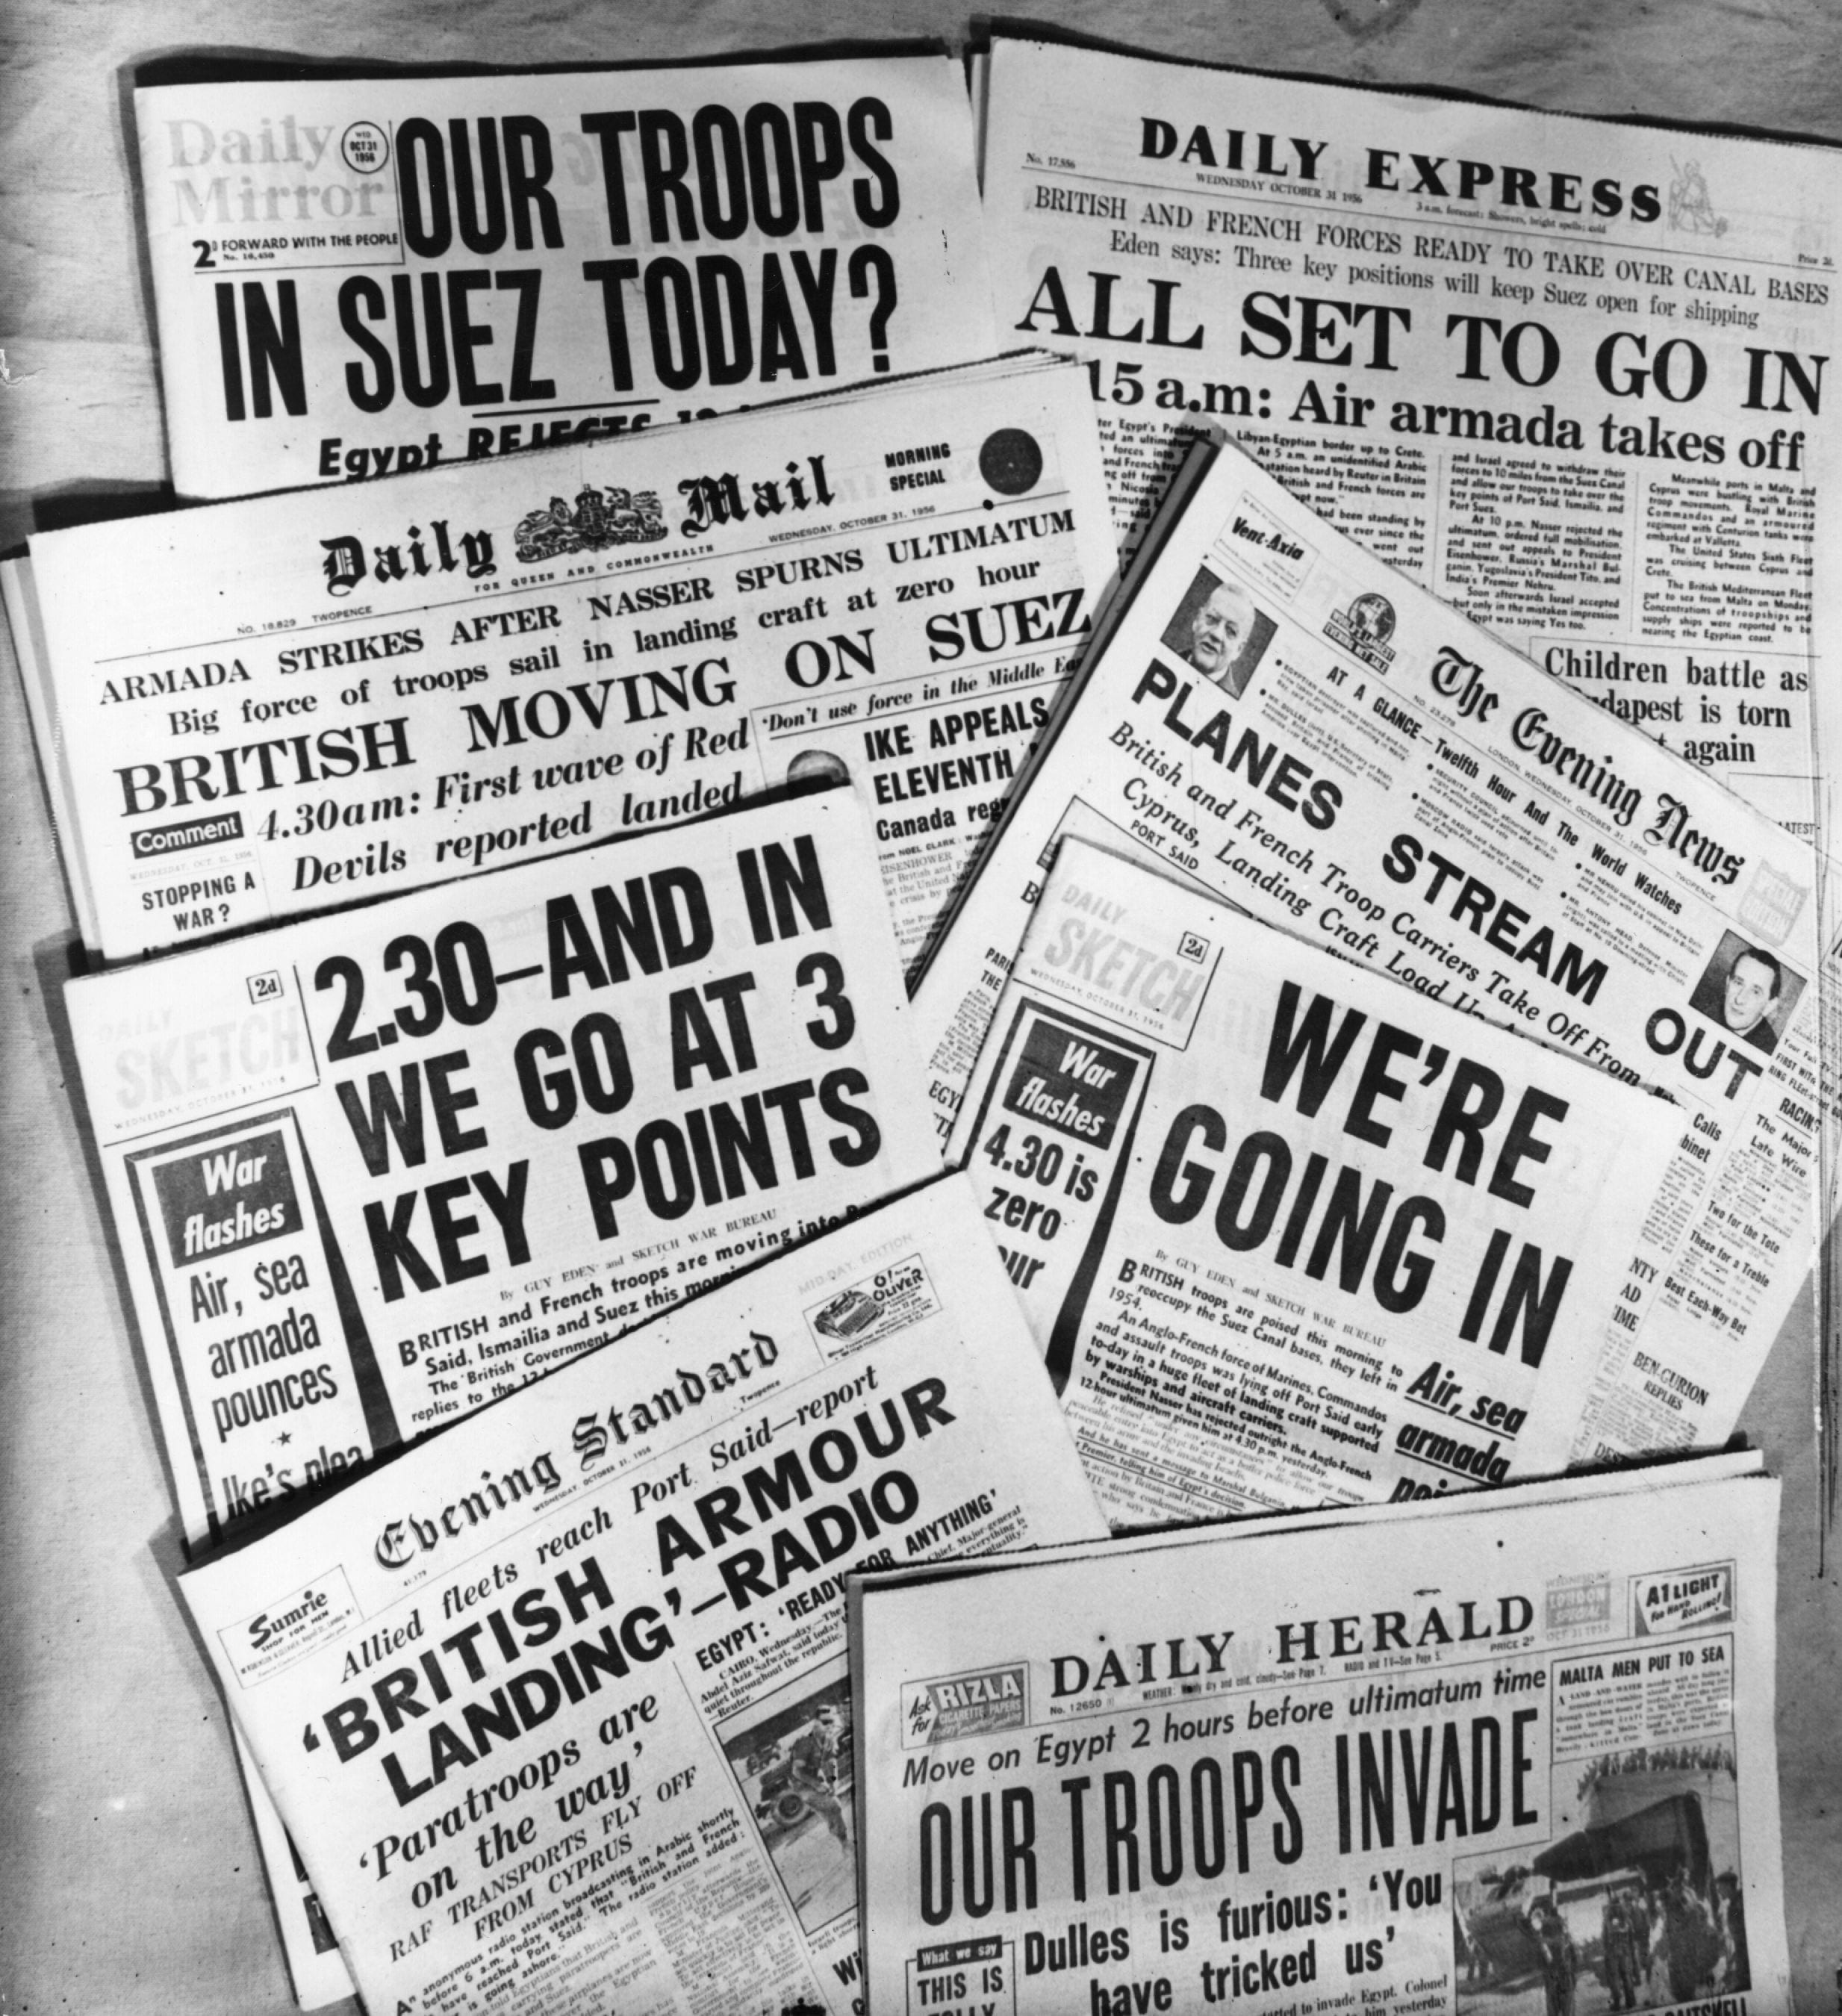 Giornali inglesi annunciano l'intervento delle truppe britanniche nel Canale di Suez. In seguito all'intervento di Nasser, nell'ottobre 1956 inglesi, francesi e israeliani approntano un piano di battaglia per tornare padroni di Suez